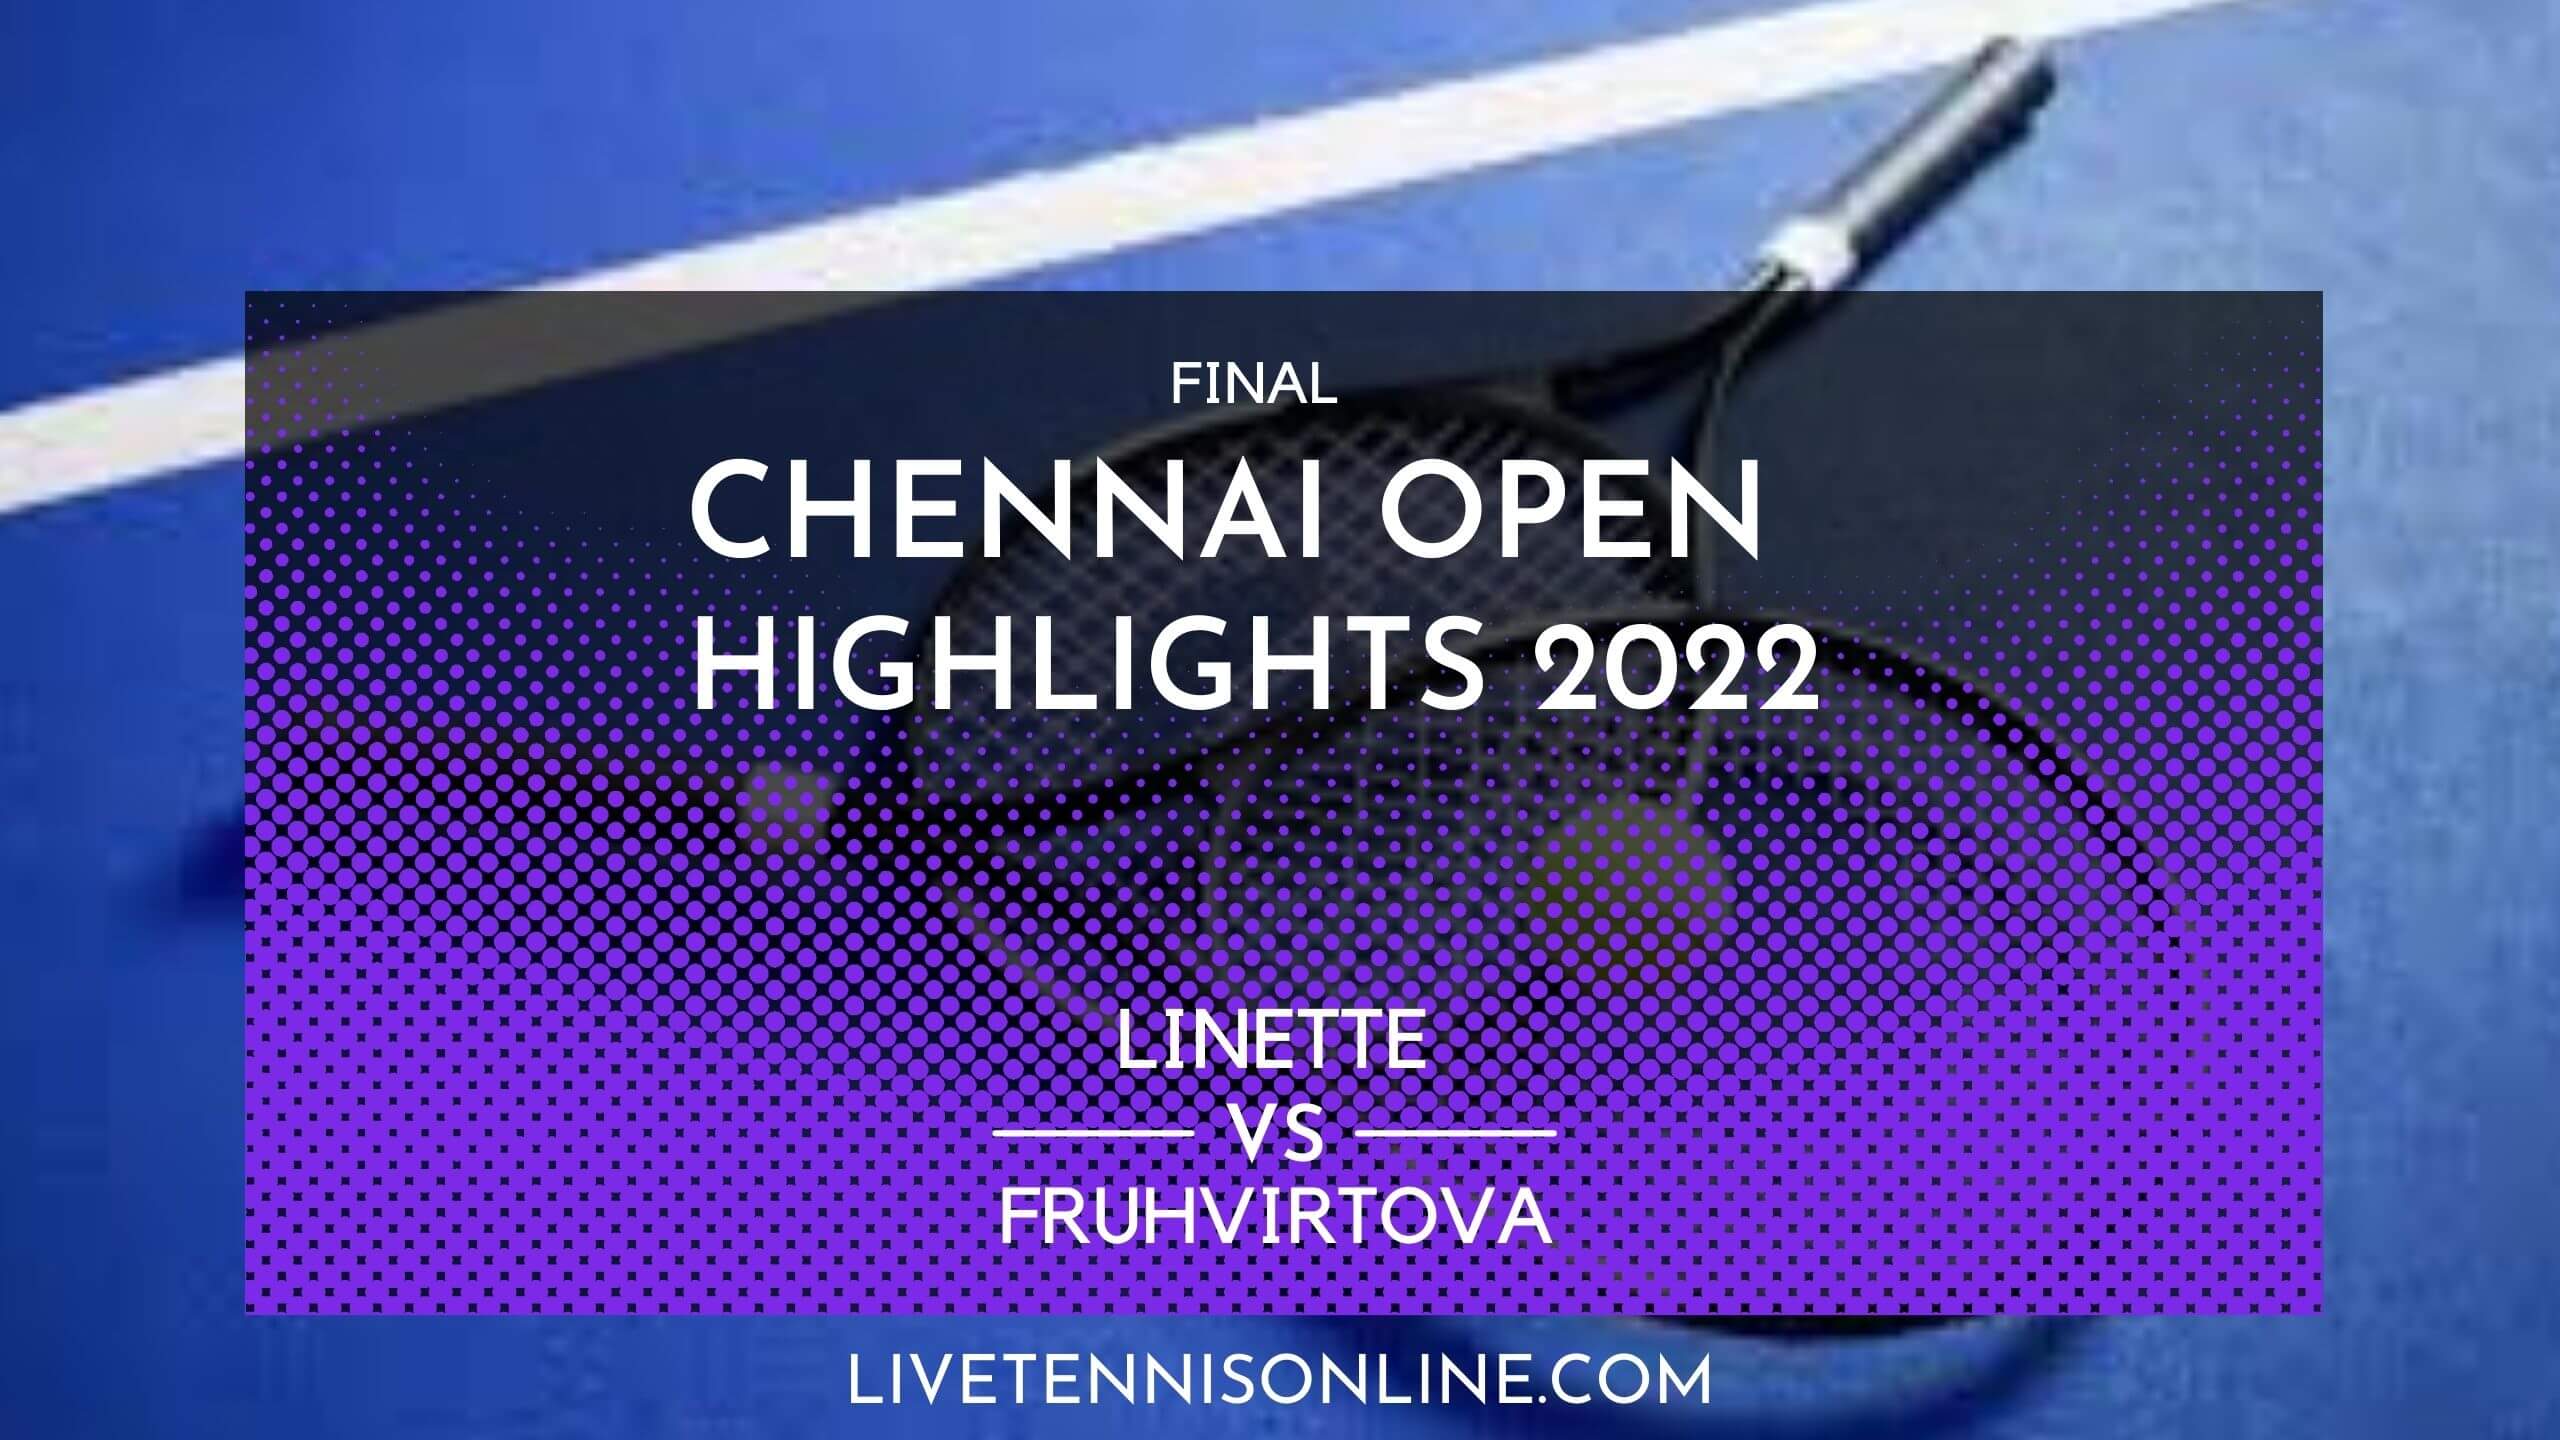 Linette Vs Fruhvirtova Final Highlights 2022 Chennai Open